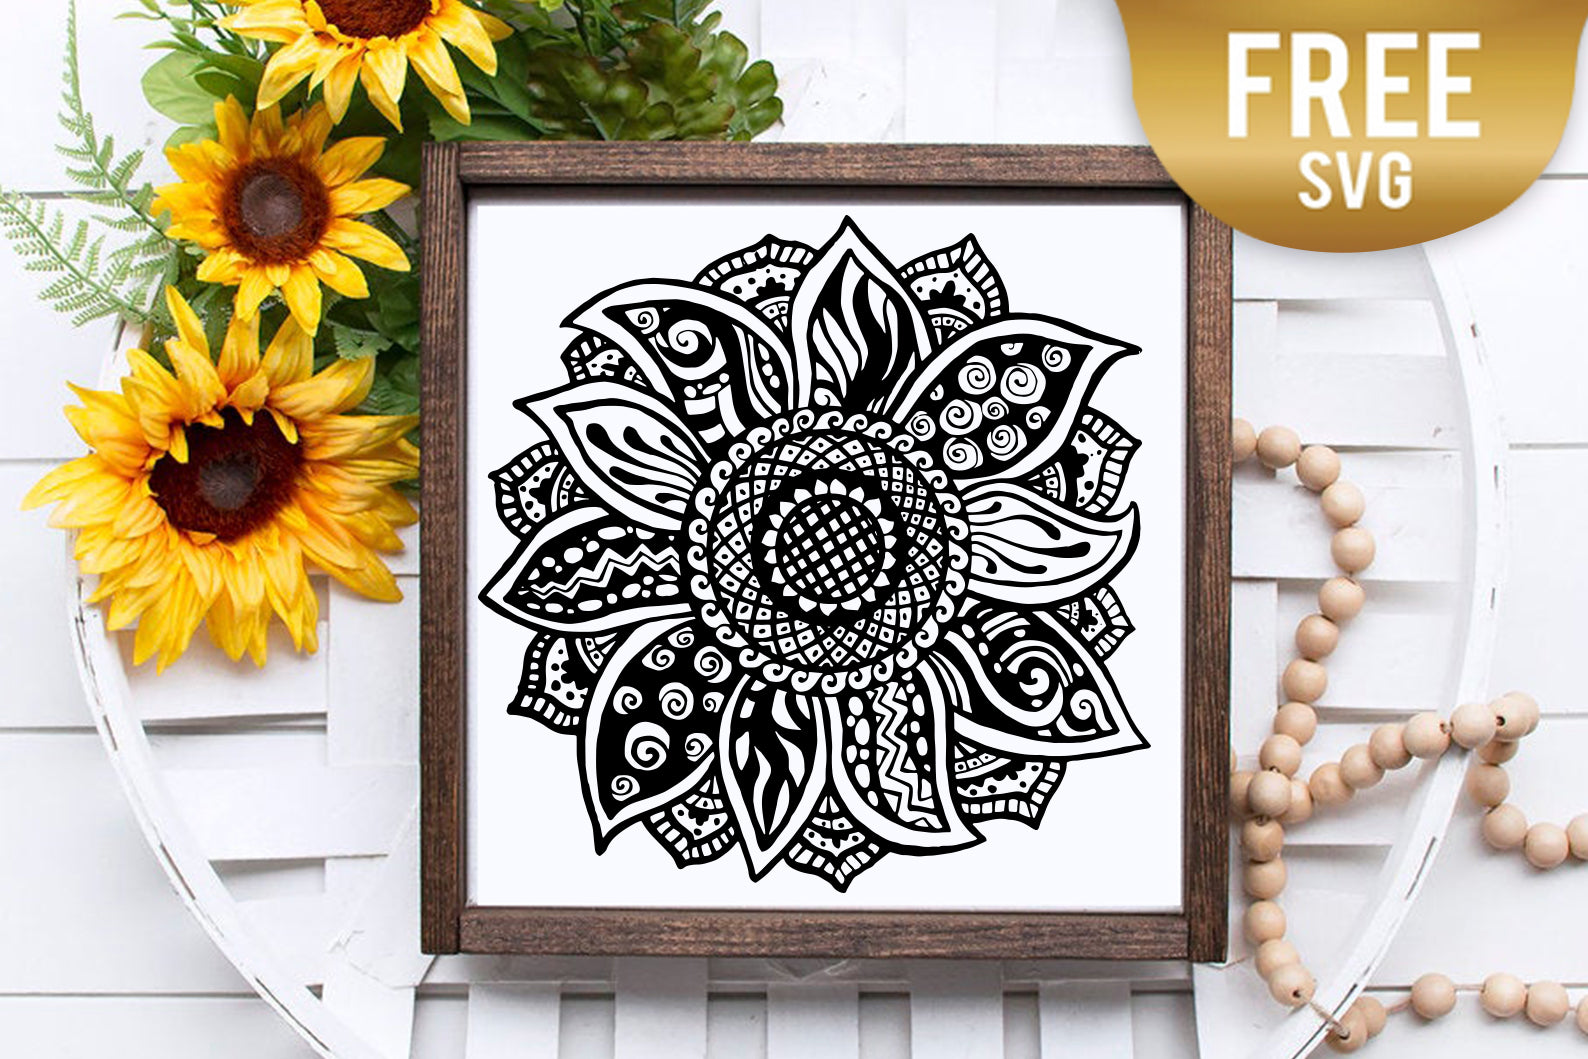 Sunflower Mandala Layered Svg Free - Layered SVG Cut File